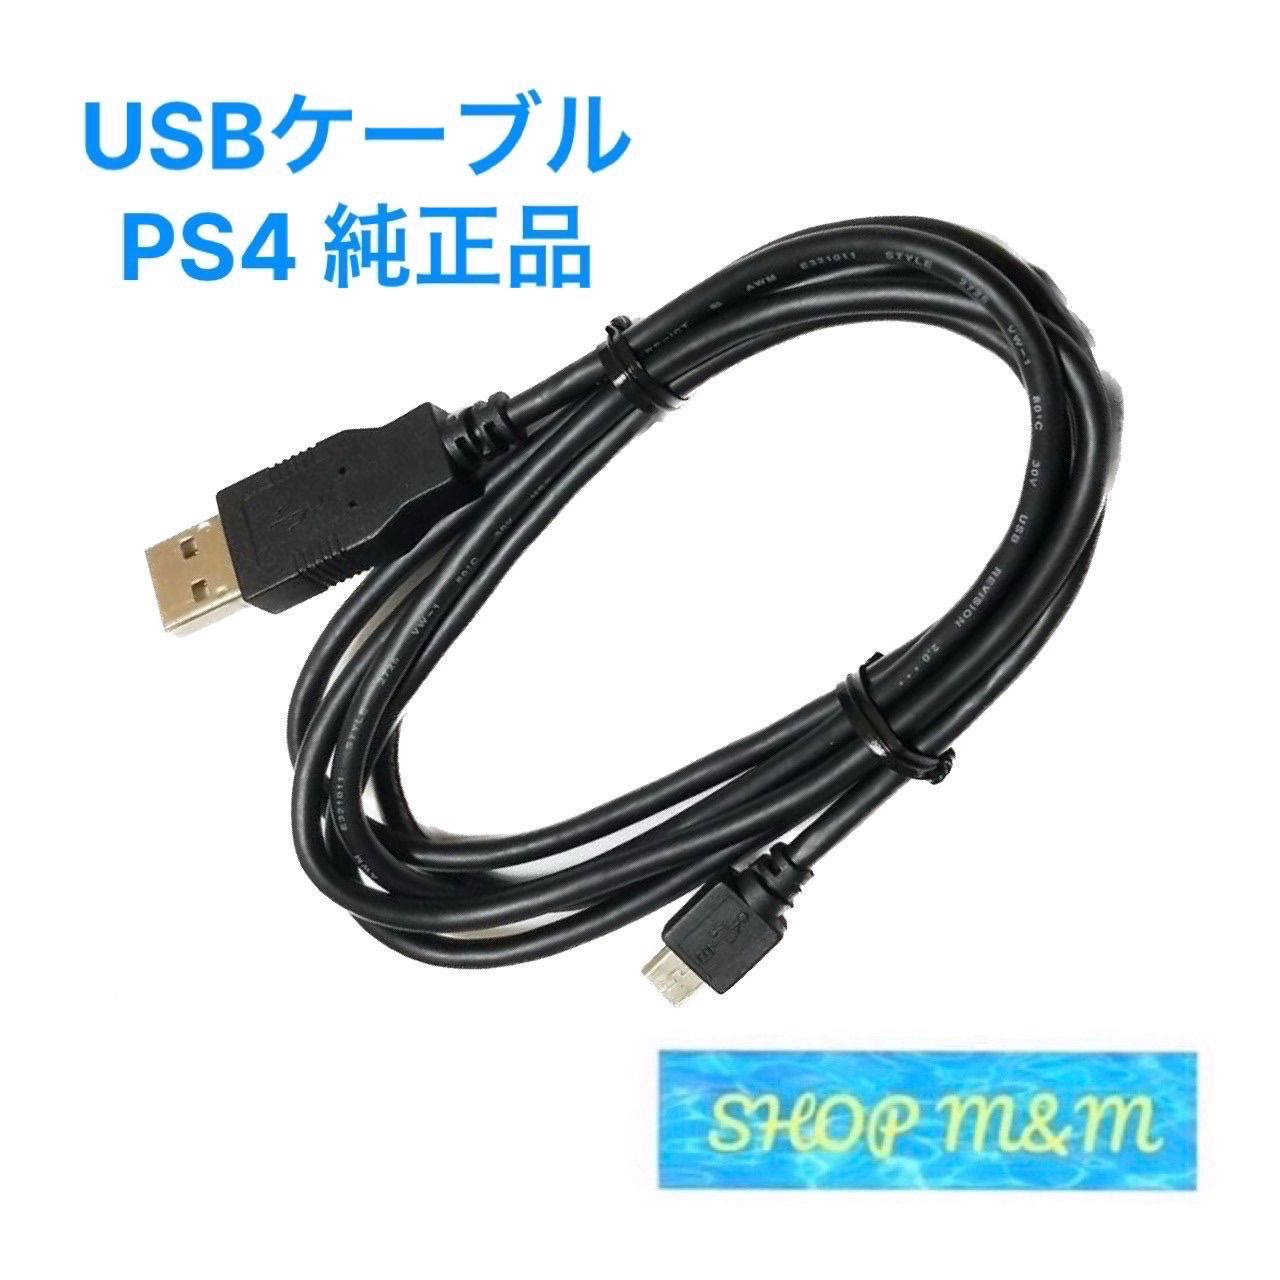 PS4 純正 充電ケーブル 付属品 ケーブル コントローラー - メルカリ